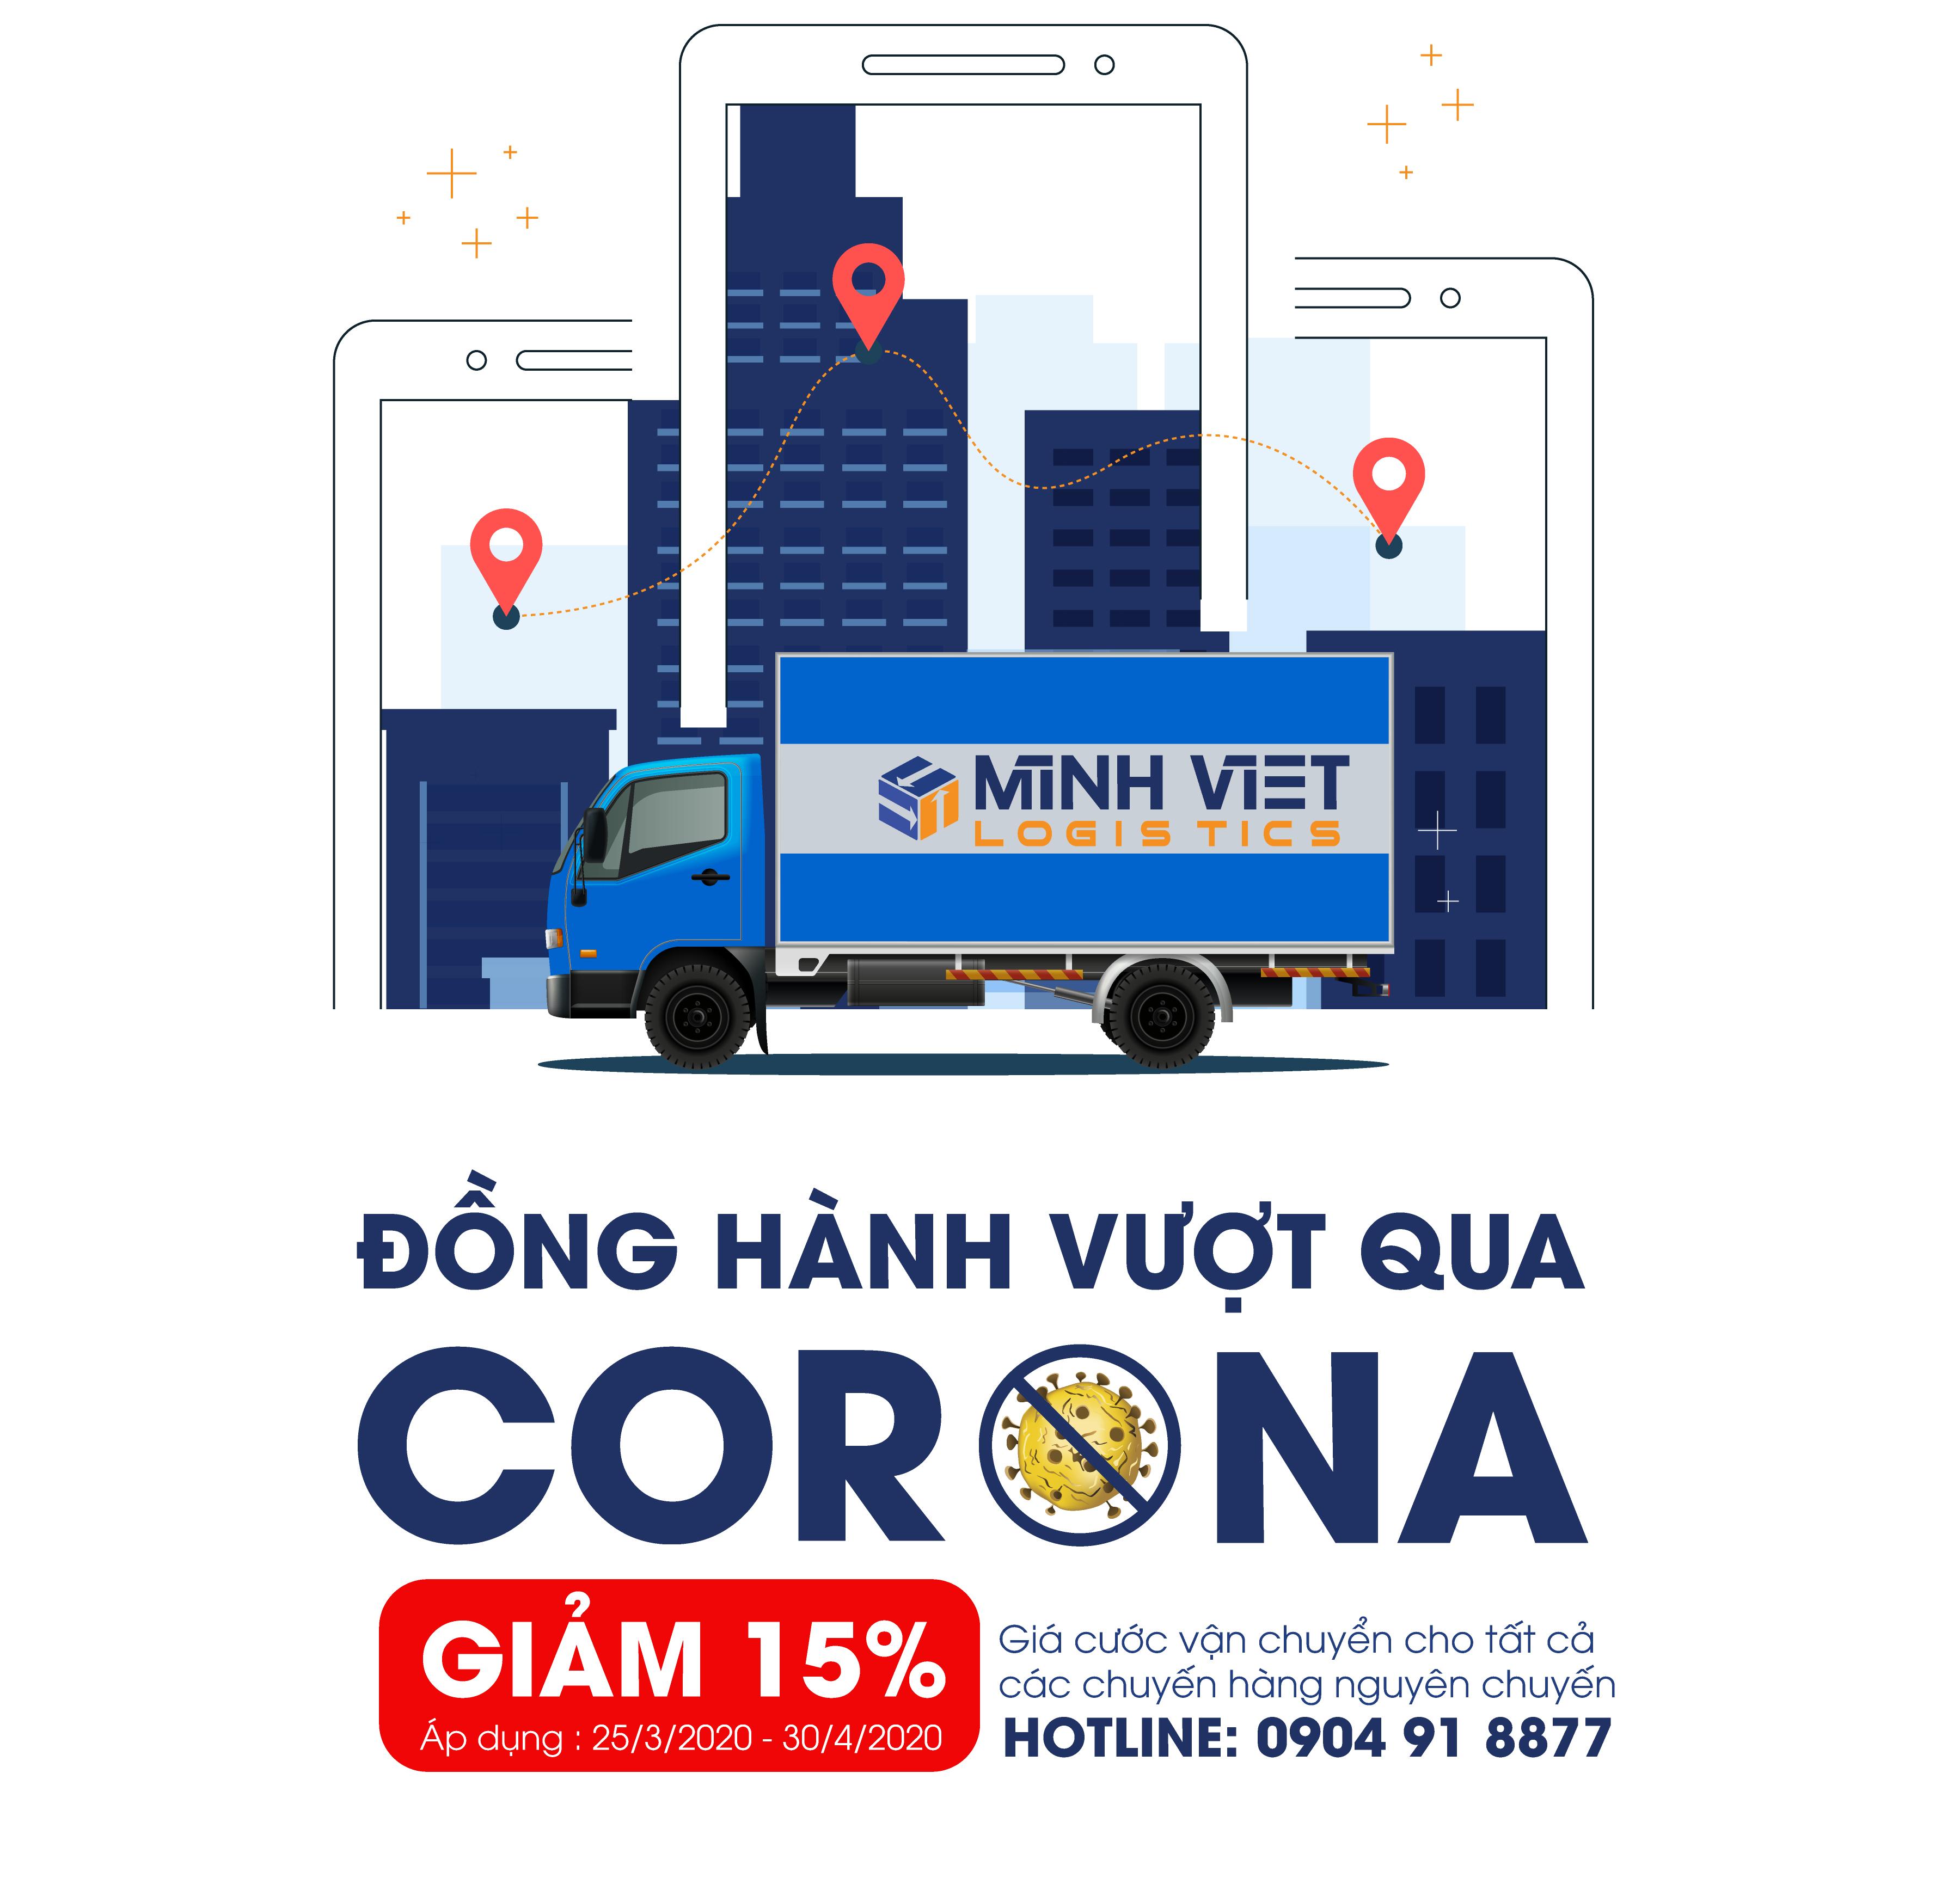 Đồng hành vượt qua Corona – Giảm 15% giá cước vận chuyển cho tất cả chuyến hàng nguyên chuyến